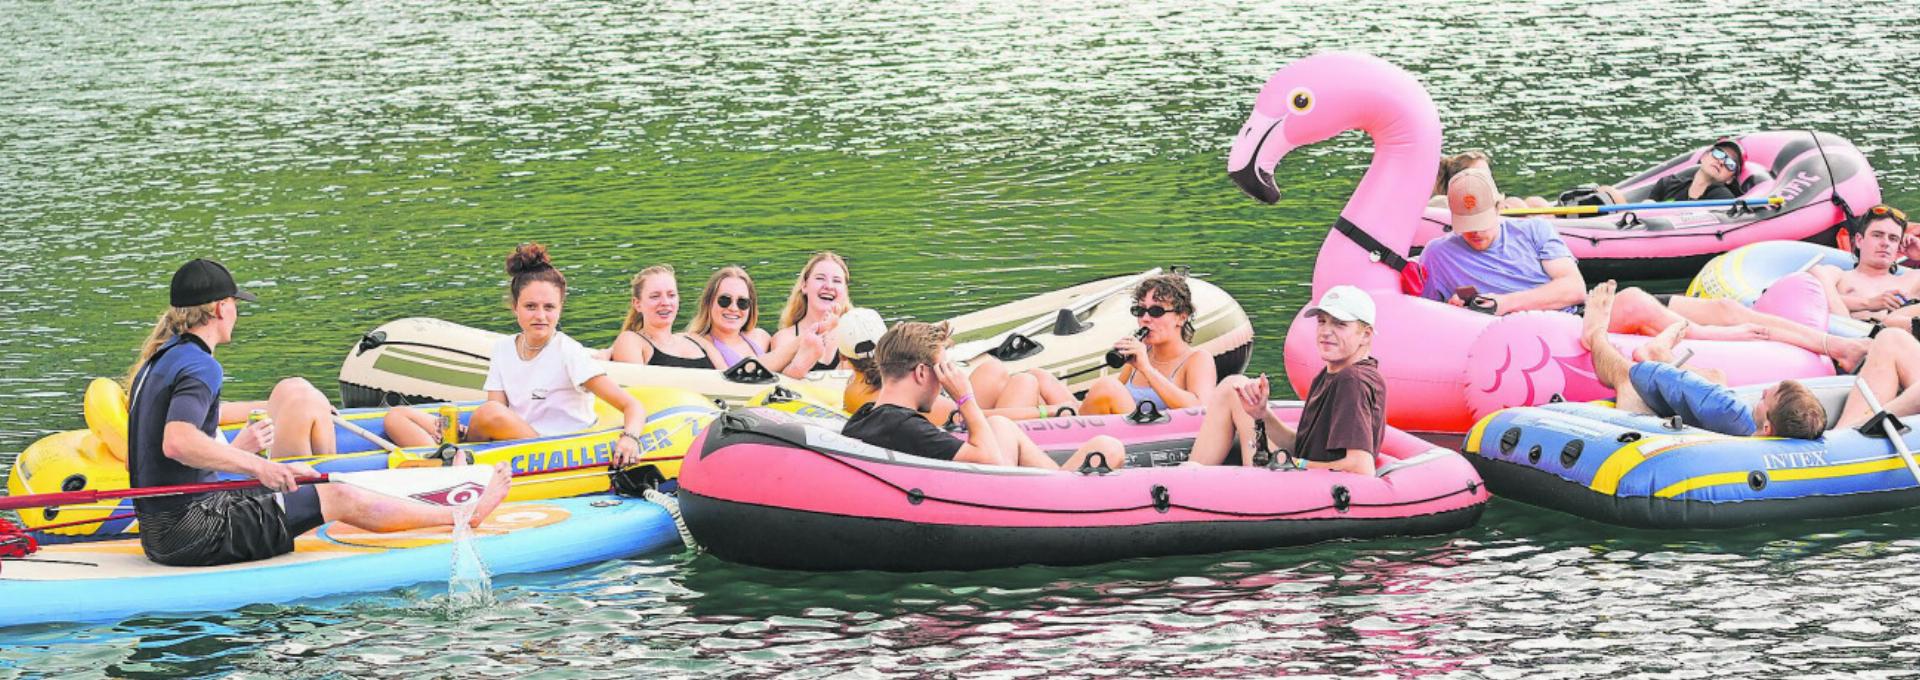 Ob Gummiboot, Stand-Up-Paddle oder aufblasbare Flamingos: Alles war erlaubt, Hauptsache es schwimmt. FOTOS: JEUNESSE SAANENLAND